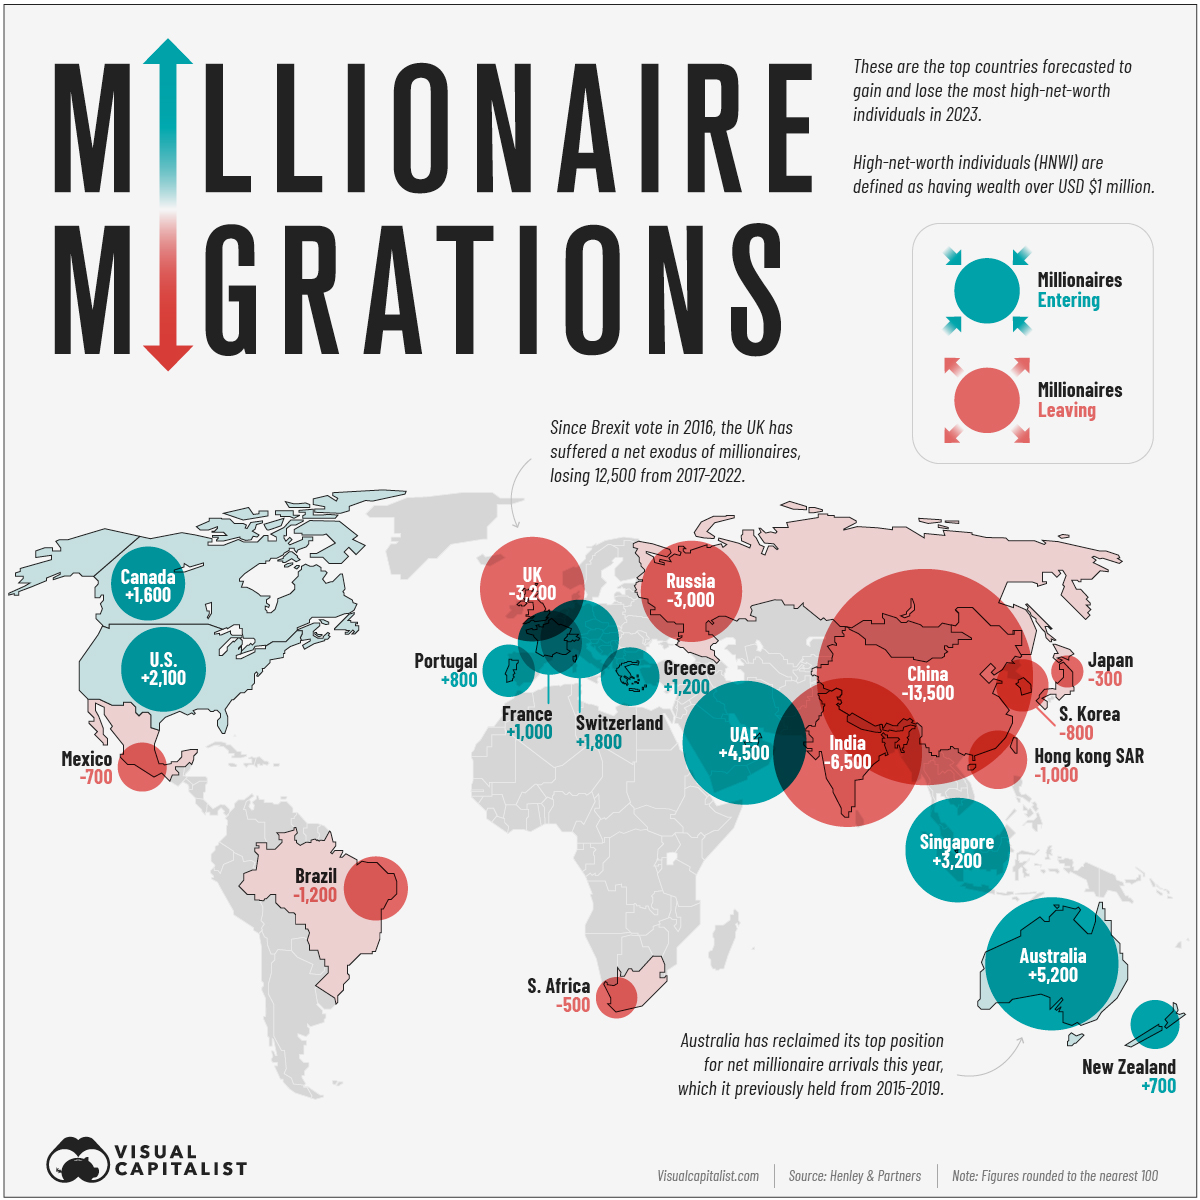 Visual Capitalist опубликовал список стран по миграции миллионеров в 2023 году.